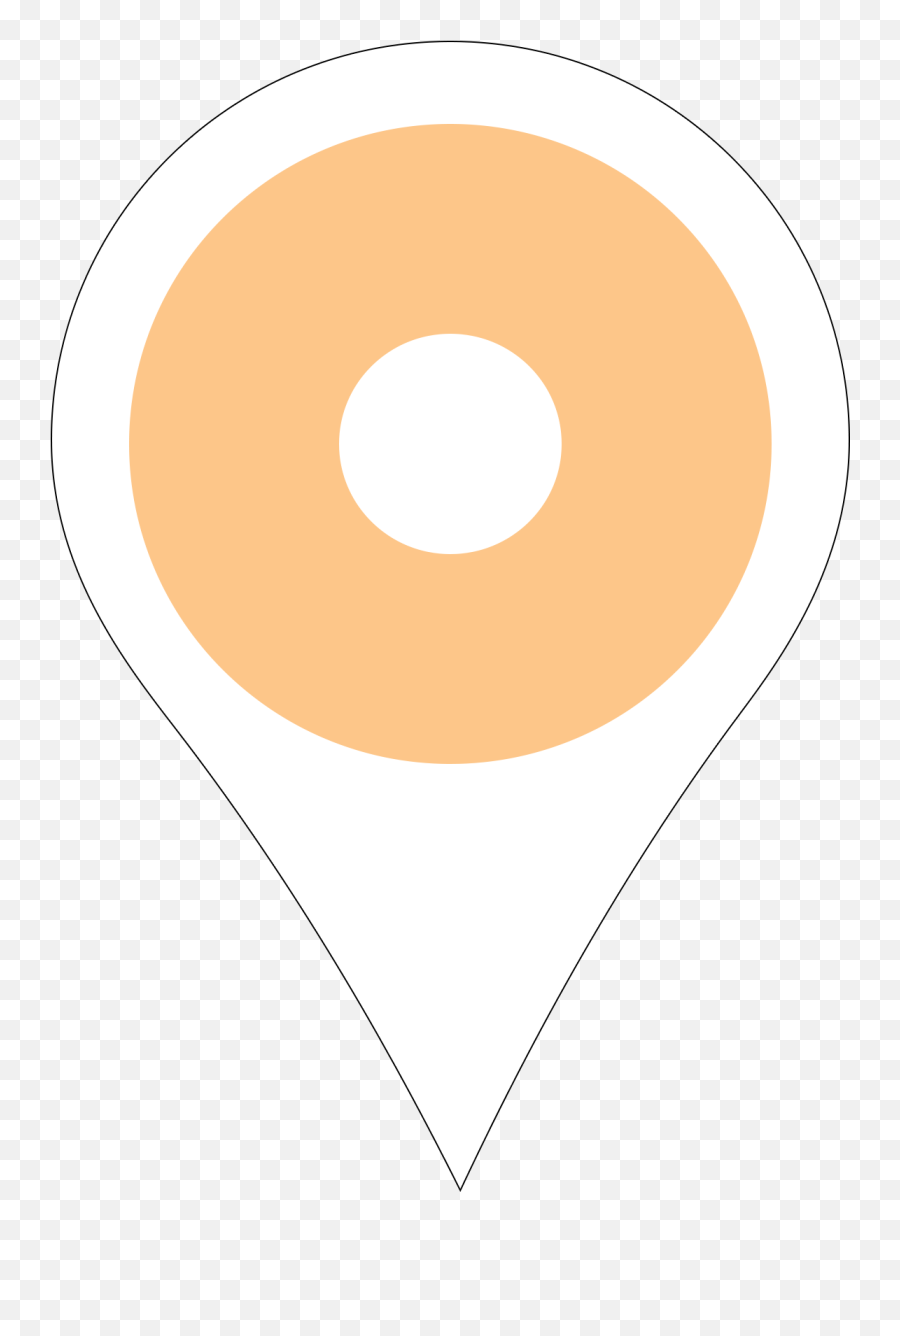 Dc Metro Baltimore Donut Maps U2014 Doughnutdays - Dot Png,Diablo 3 Icon Set